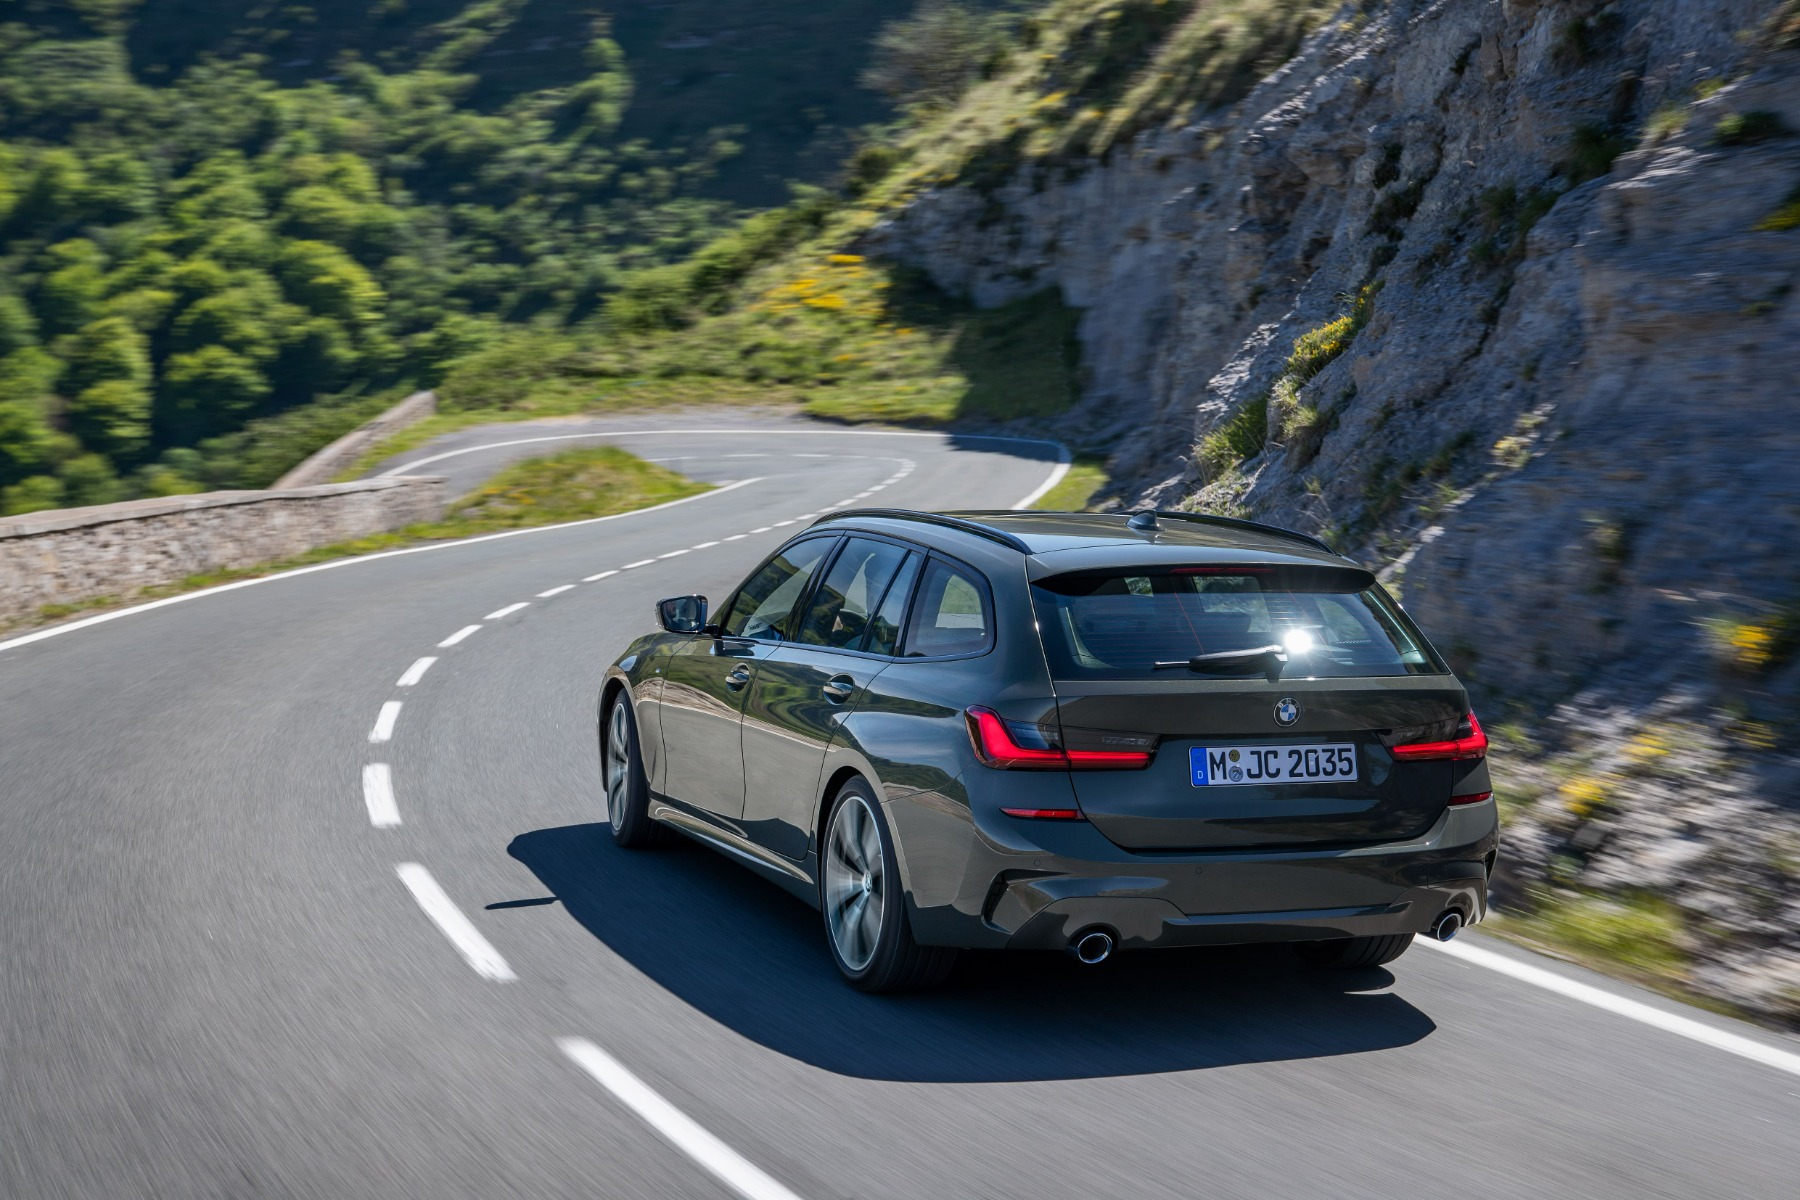 Da Autotorino porte aperte per le novità BMW: Nuova X1 e Serie 3 Touring